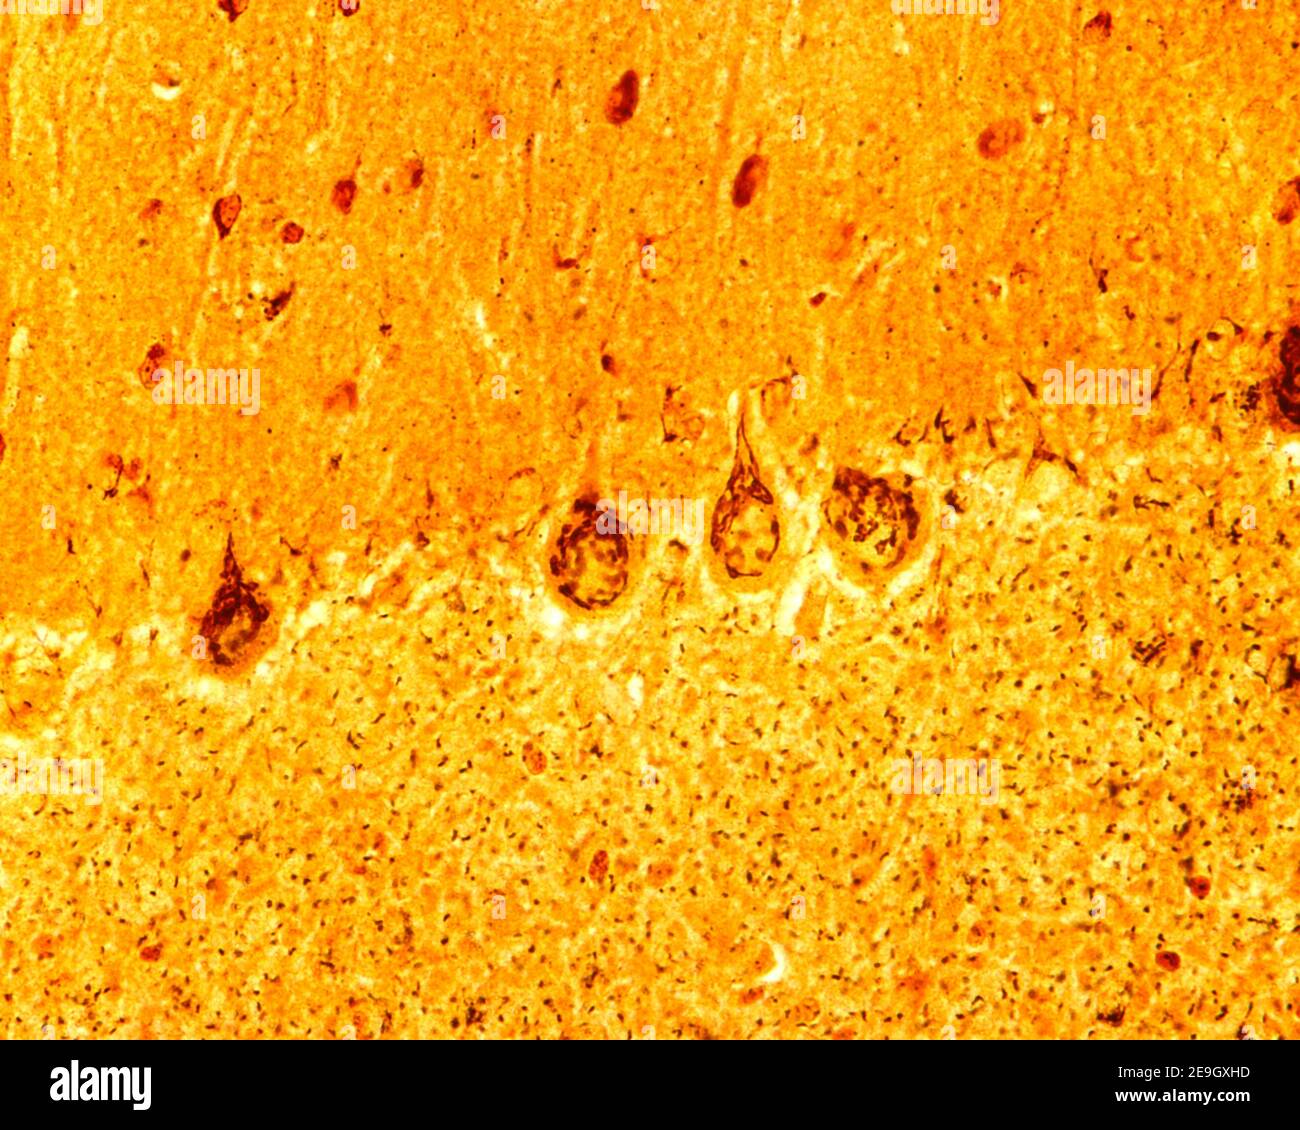 Kleinhirnrinde. Silber-Methode für Golgi-Apparat. In Purkinje Neuronen umgeben die Dictyosomen den Kern und gelangen in den apikalen dendritischen Stamm Stockfoto